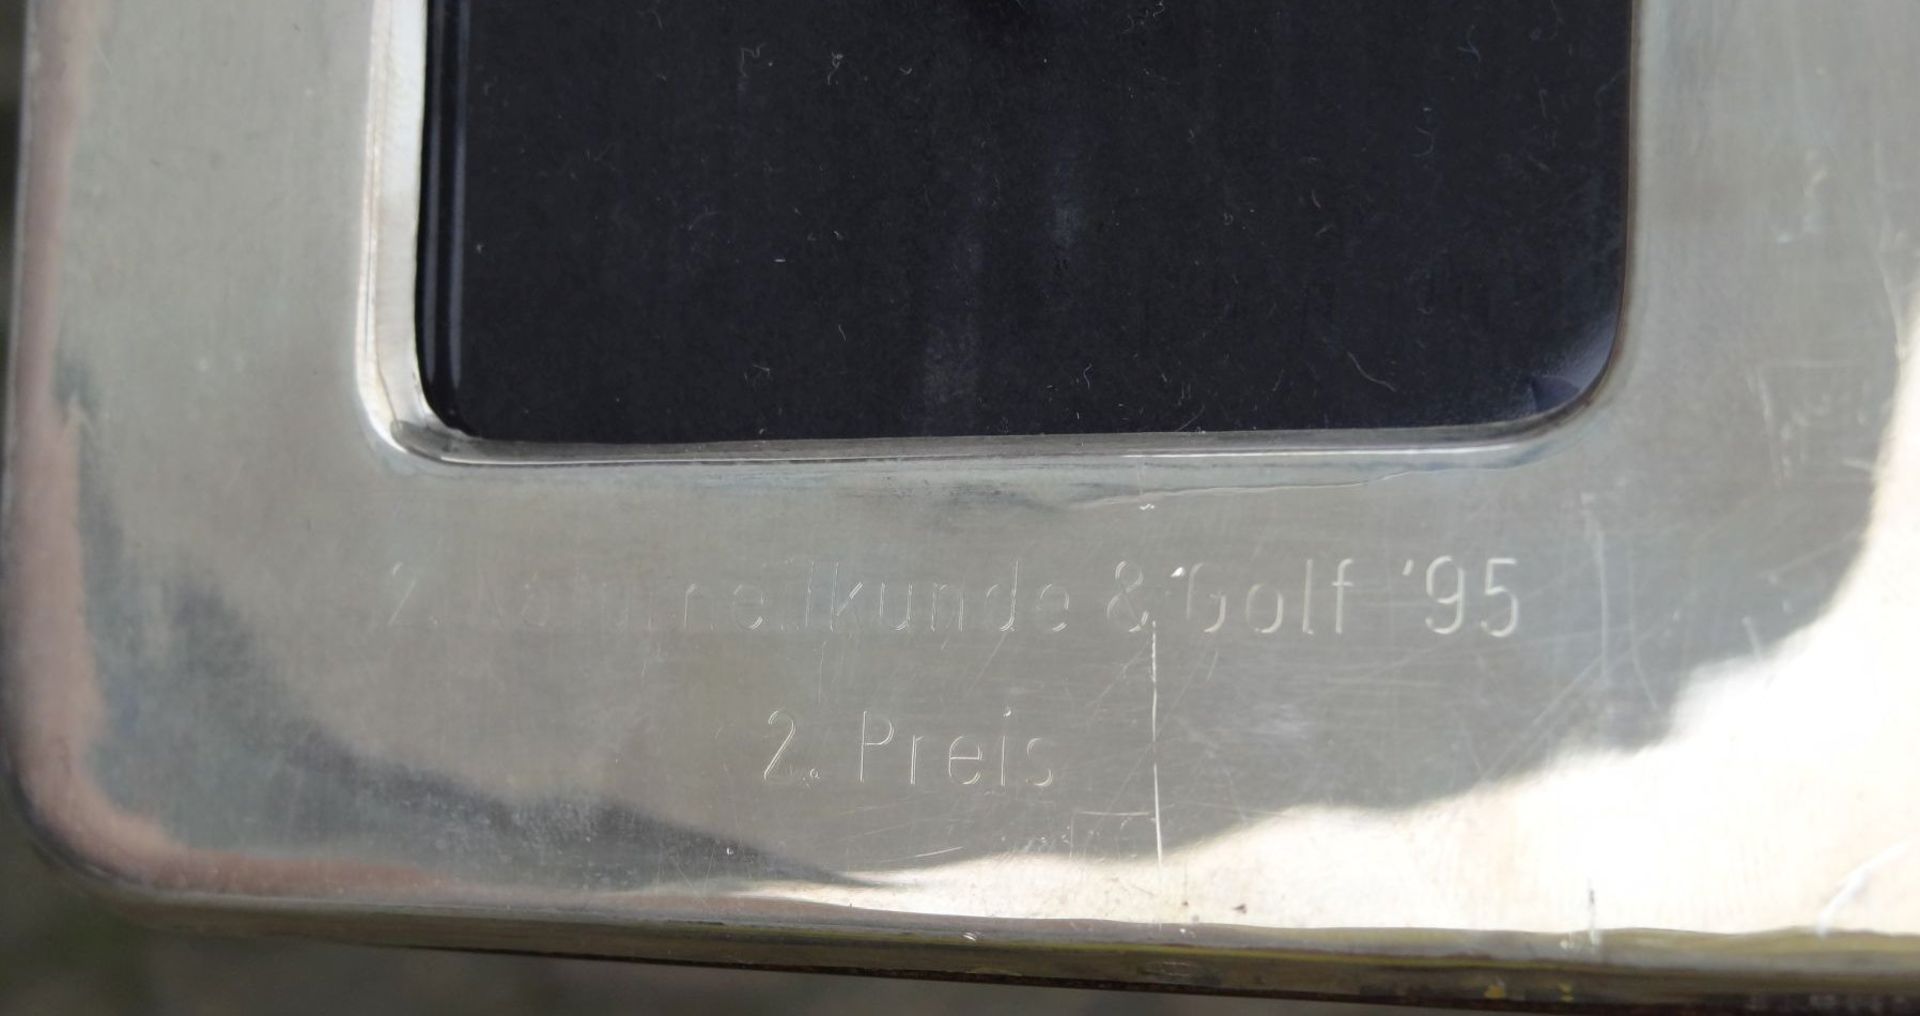 Tischfotorahmen, Silber-925-, Gravur, Sportpreis, 1995, 13x10 cm - Bild 5 aus 5